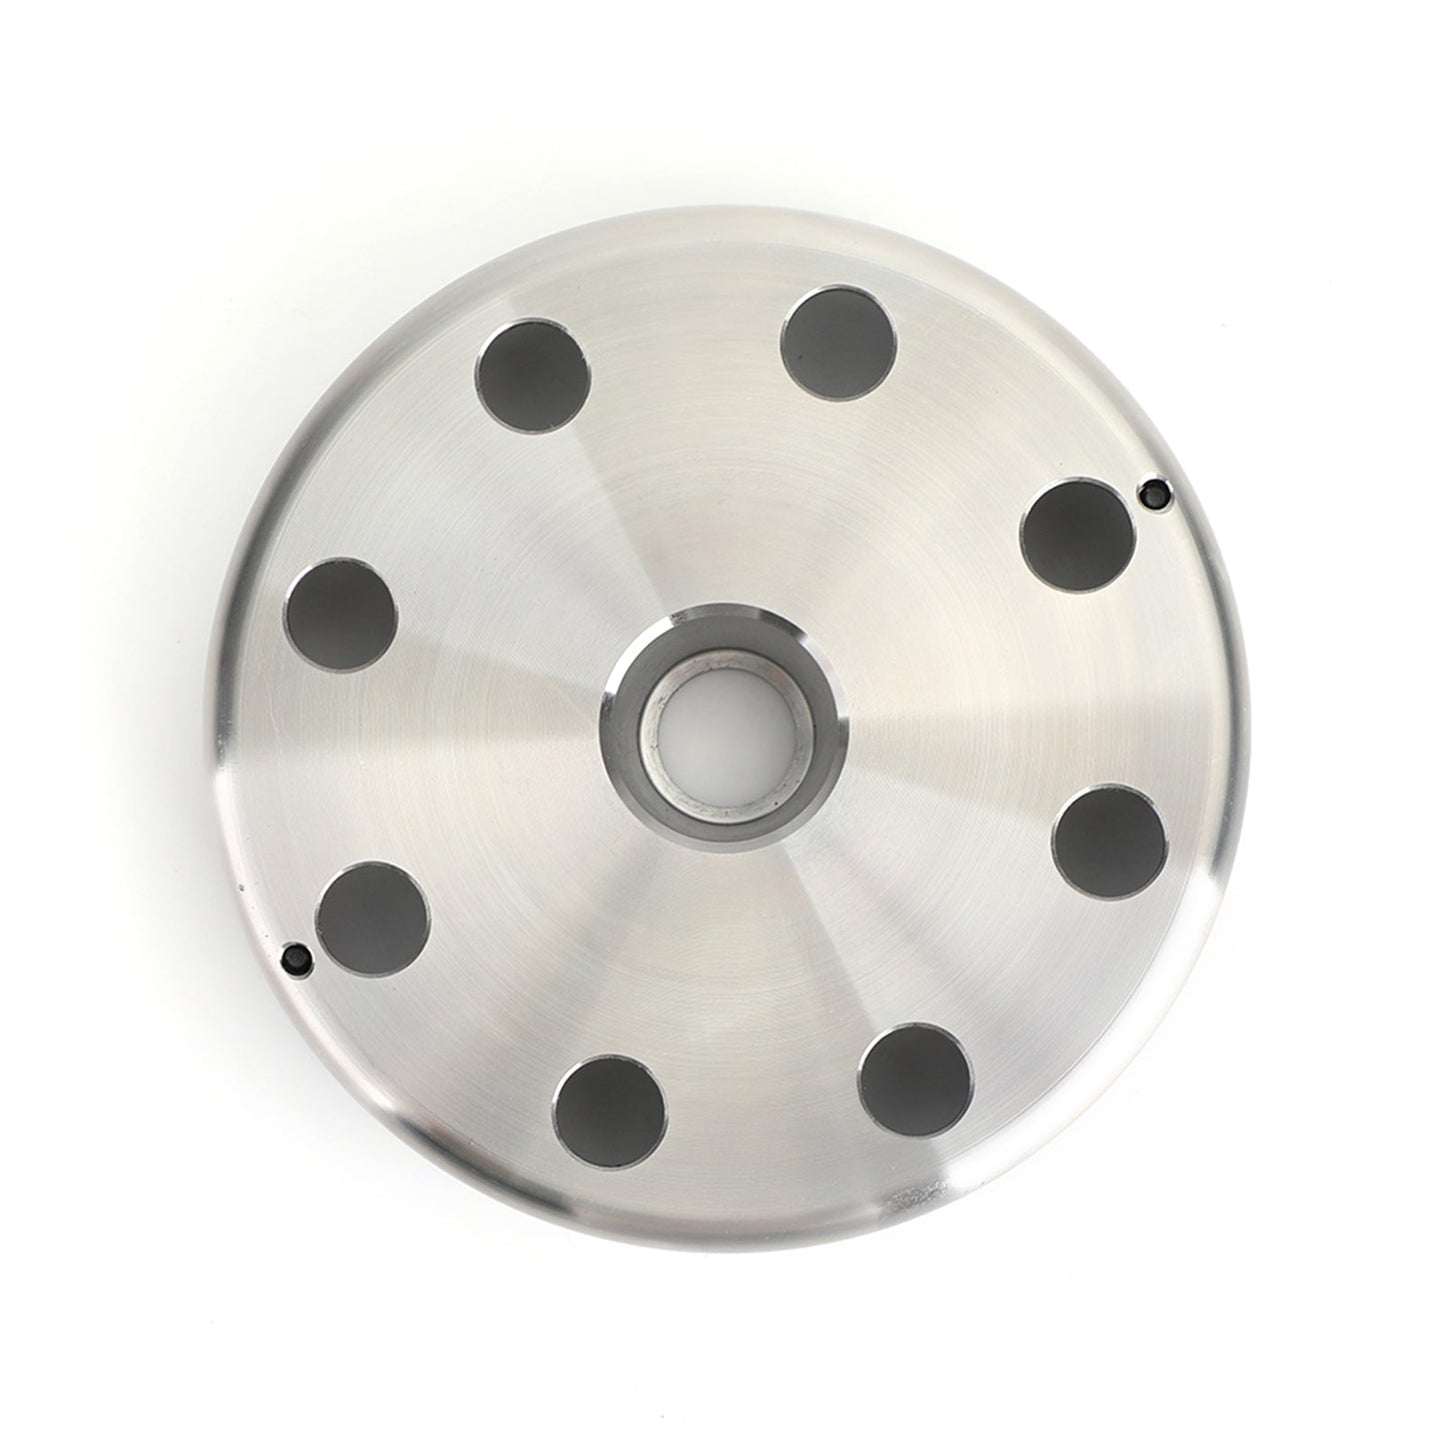 Schwungradmagnetengenerator Rotor für Suzuki GSX-R 1000 31402-41G00 31402-41G10 Generic